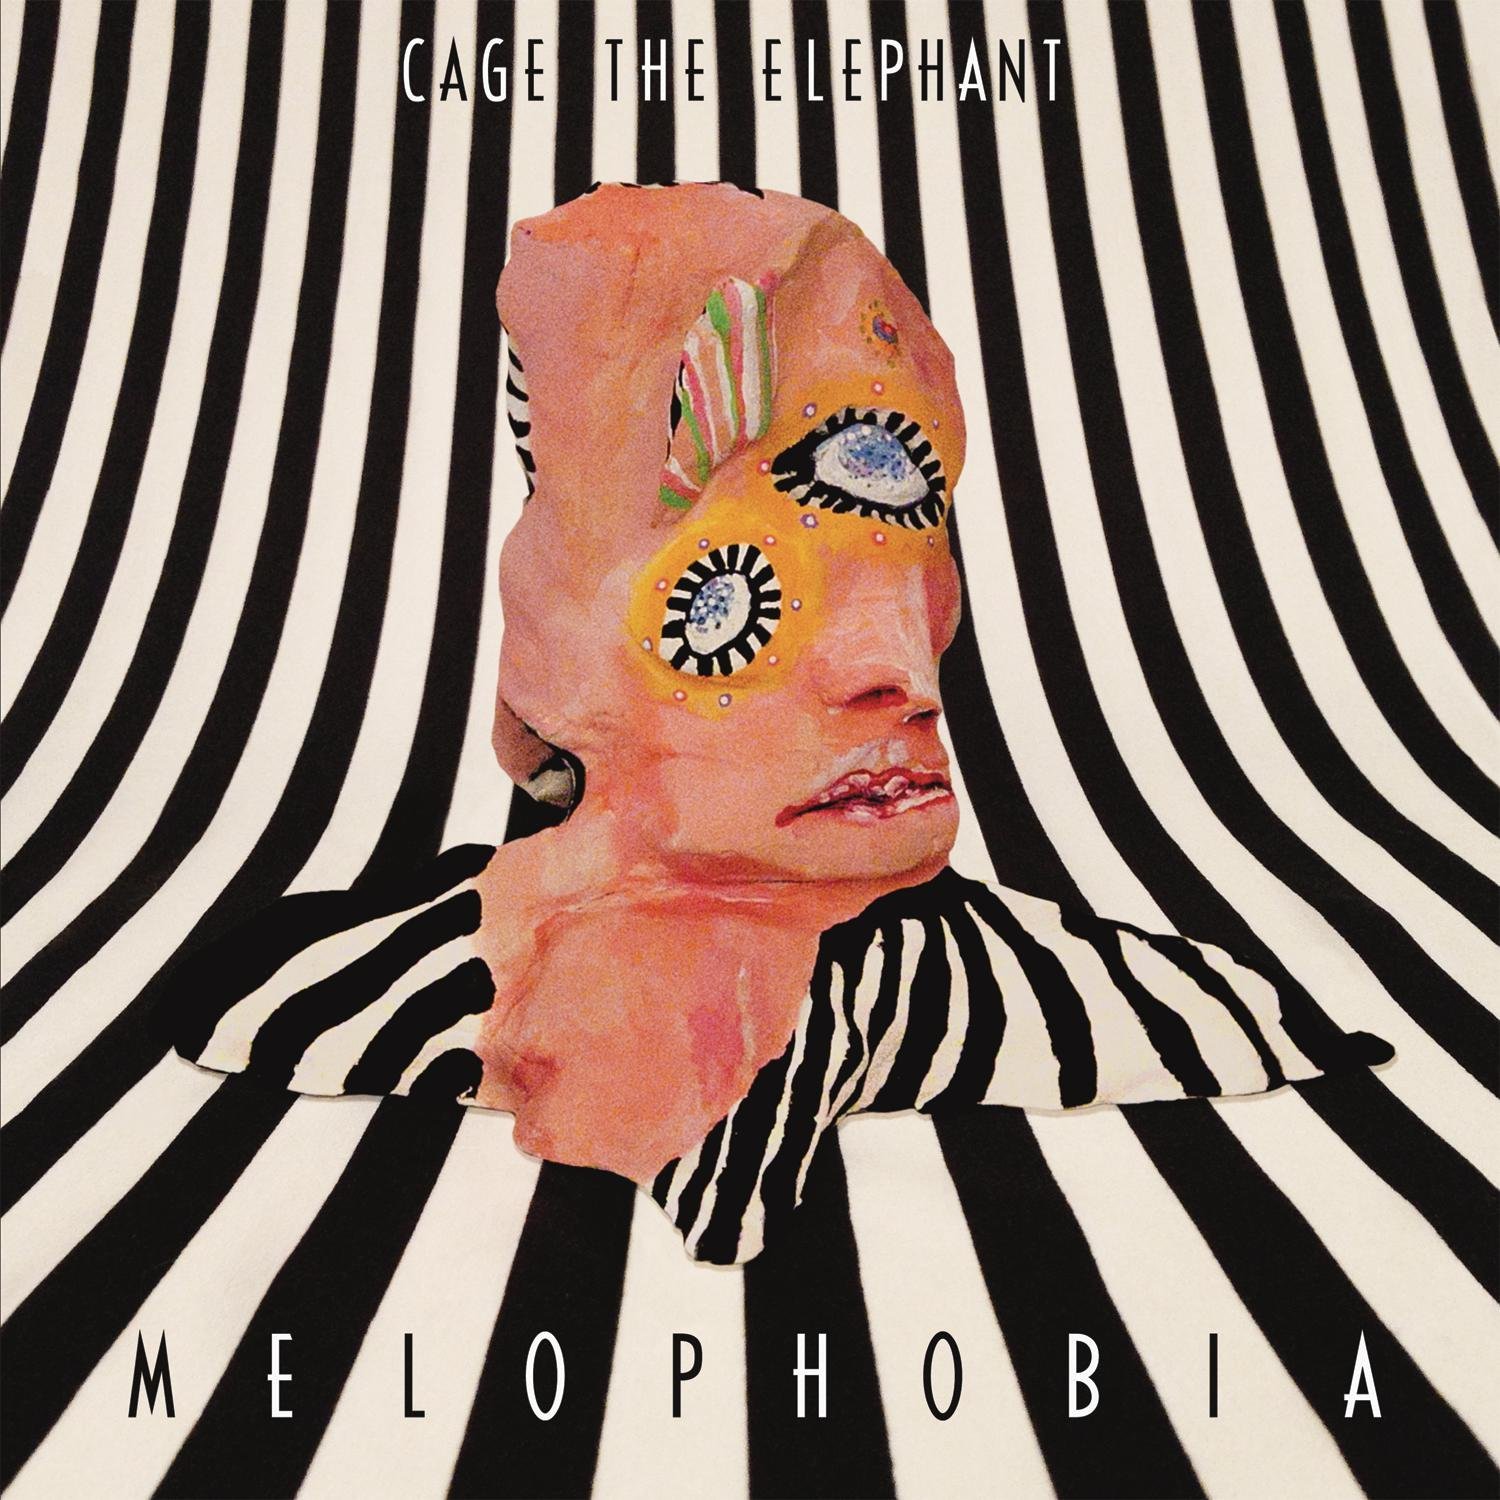 Vinile Cage The Elephant - Melophobia NUOVO SIGILLATO, EDIZIONE DEL 21/11/2013 SUBITO DISPONIBILE